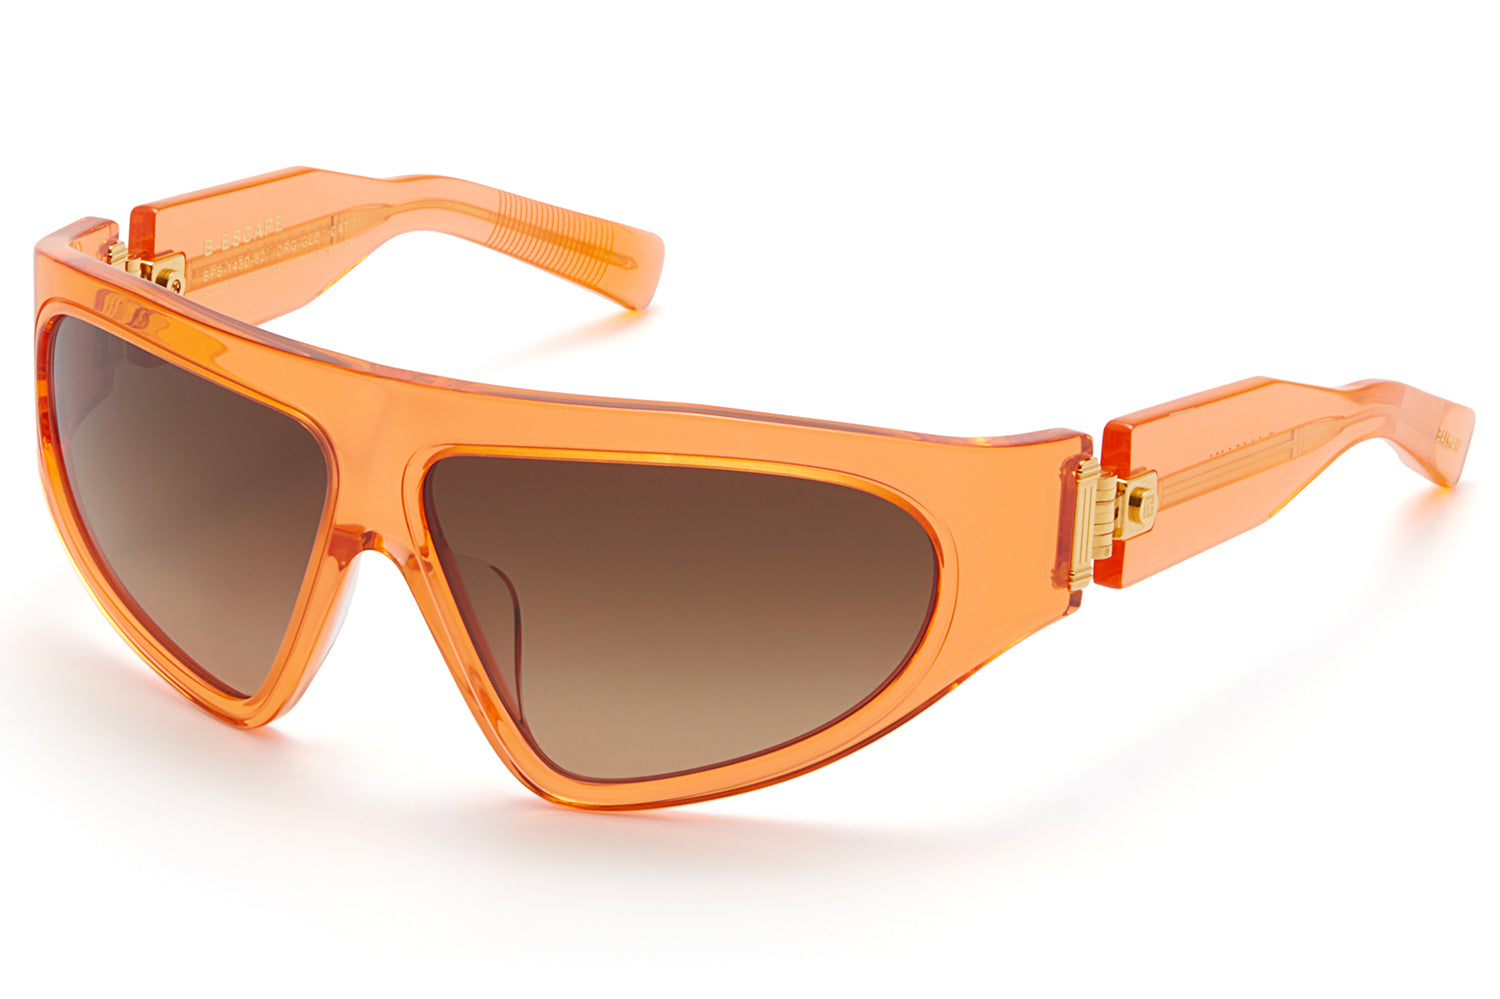 Louis Vuitton Escape Round Sunglasses